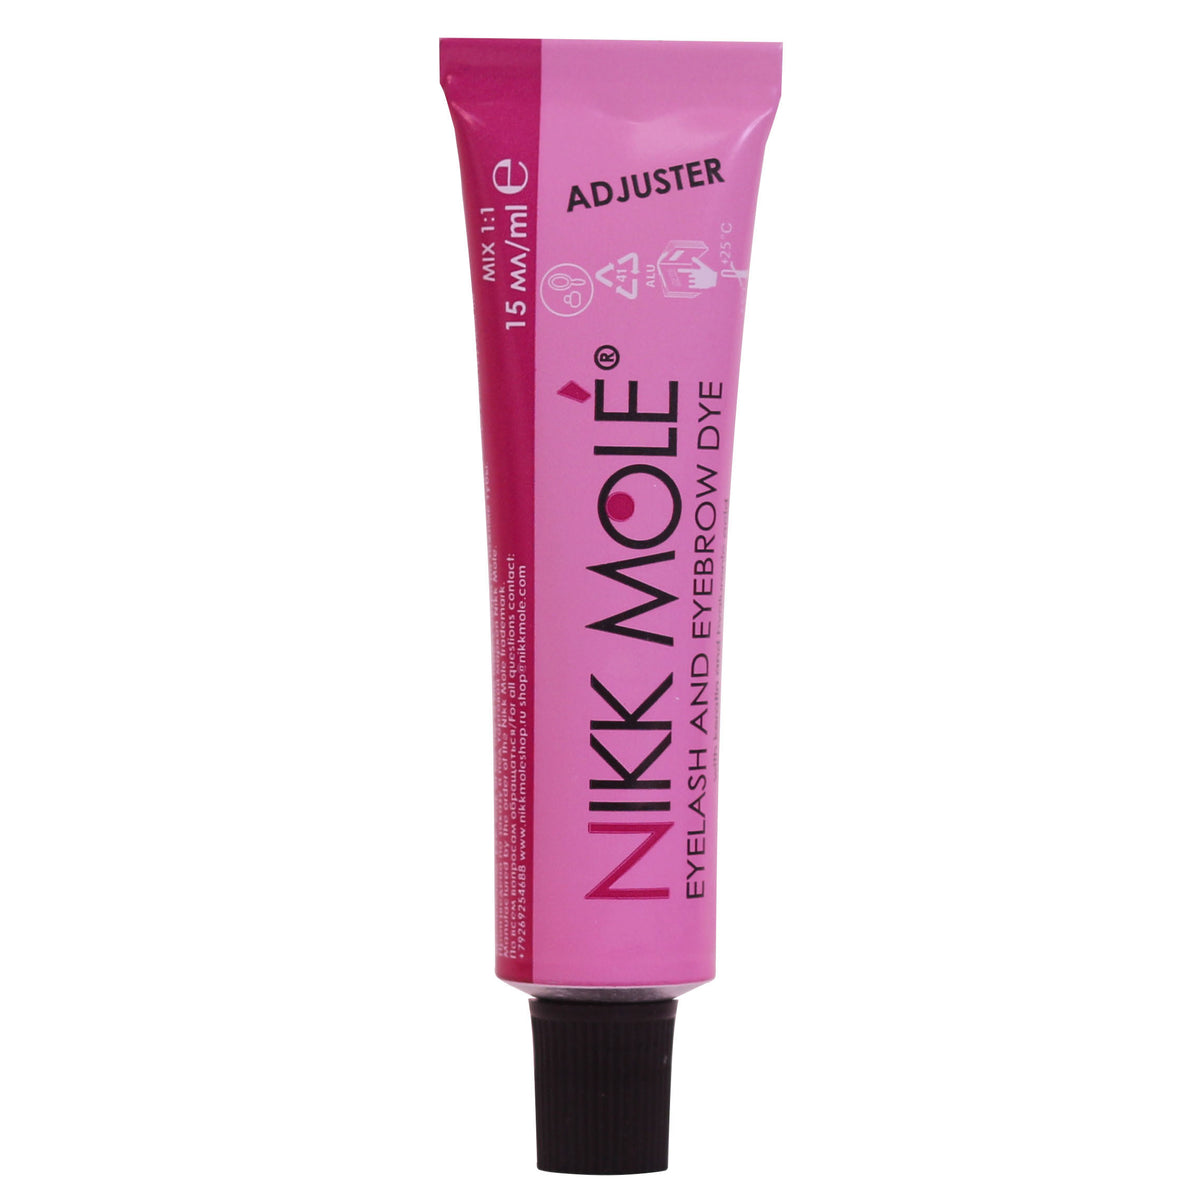 Nikk Mole - Eyebrow & Eyelash Dye - Adjuster